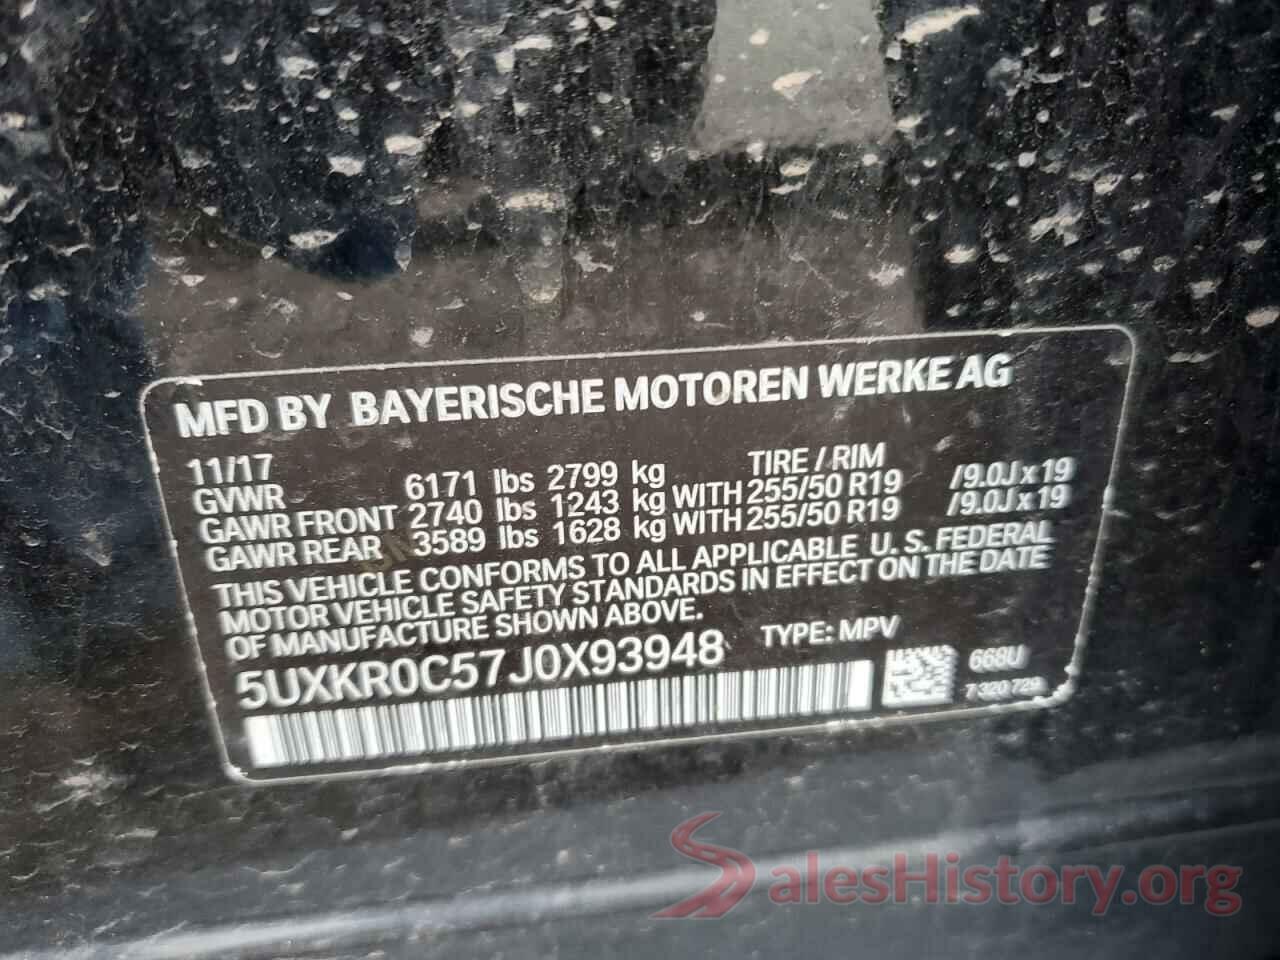 5UXKR0C57J0X93948 2018 BMW X5